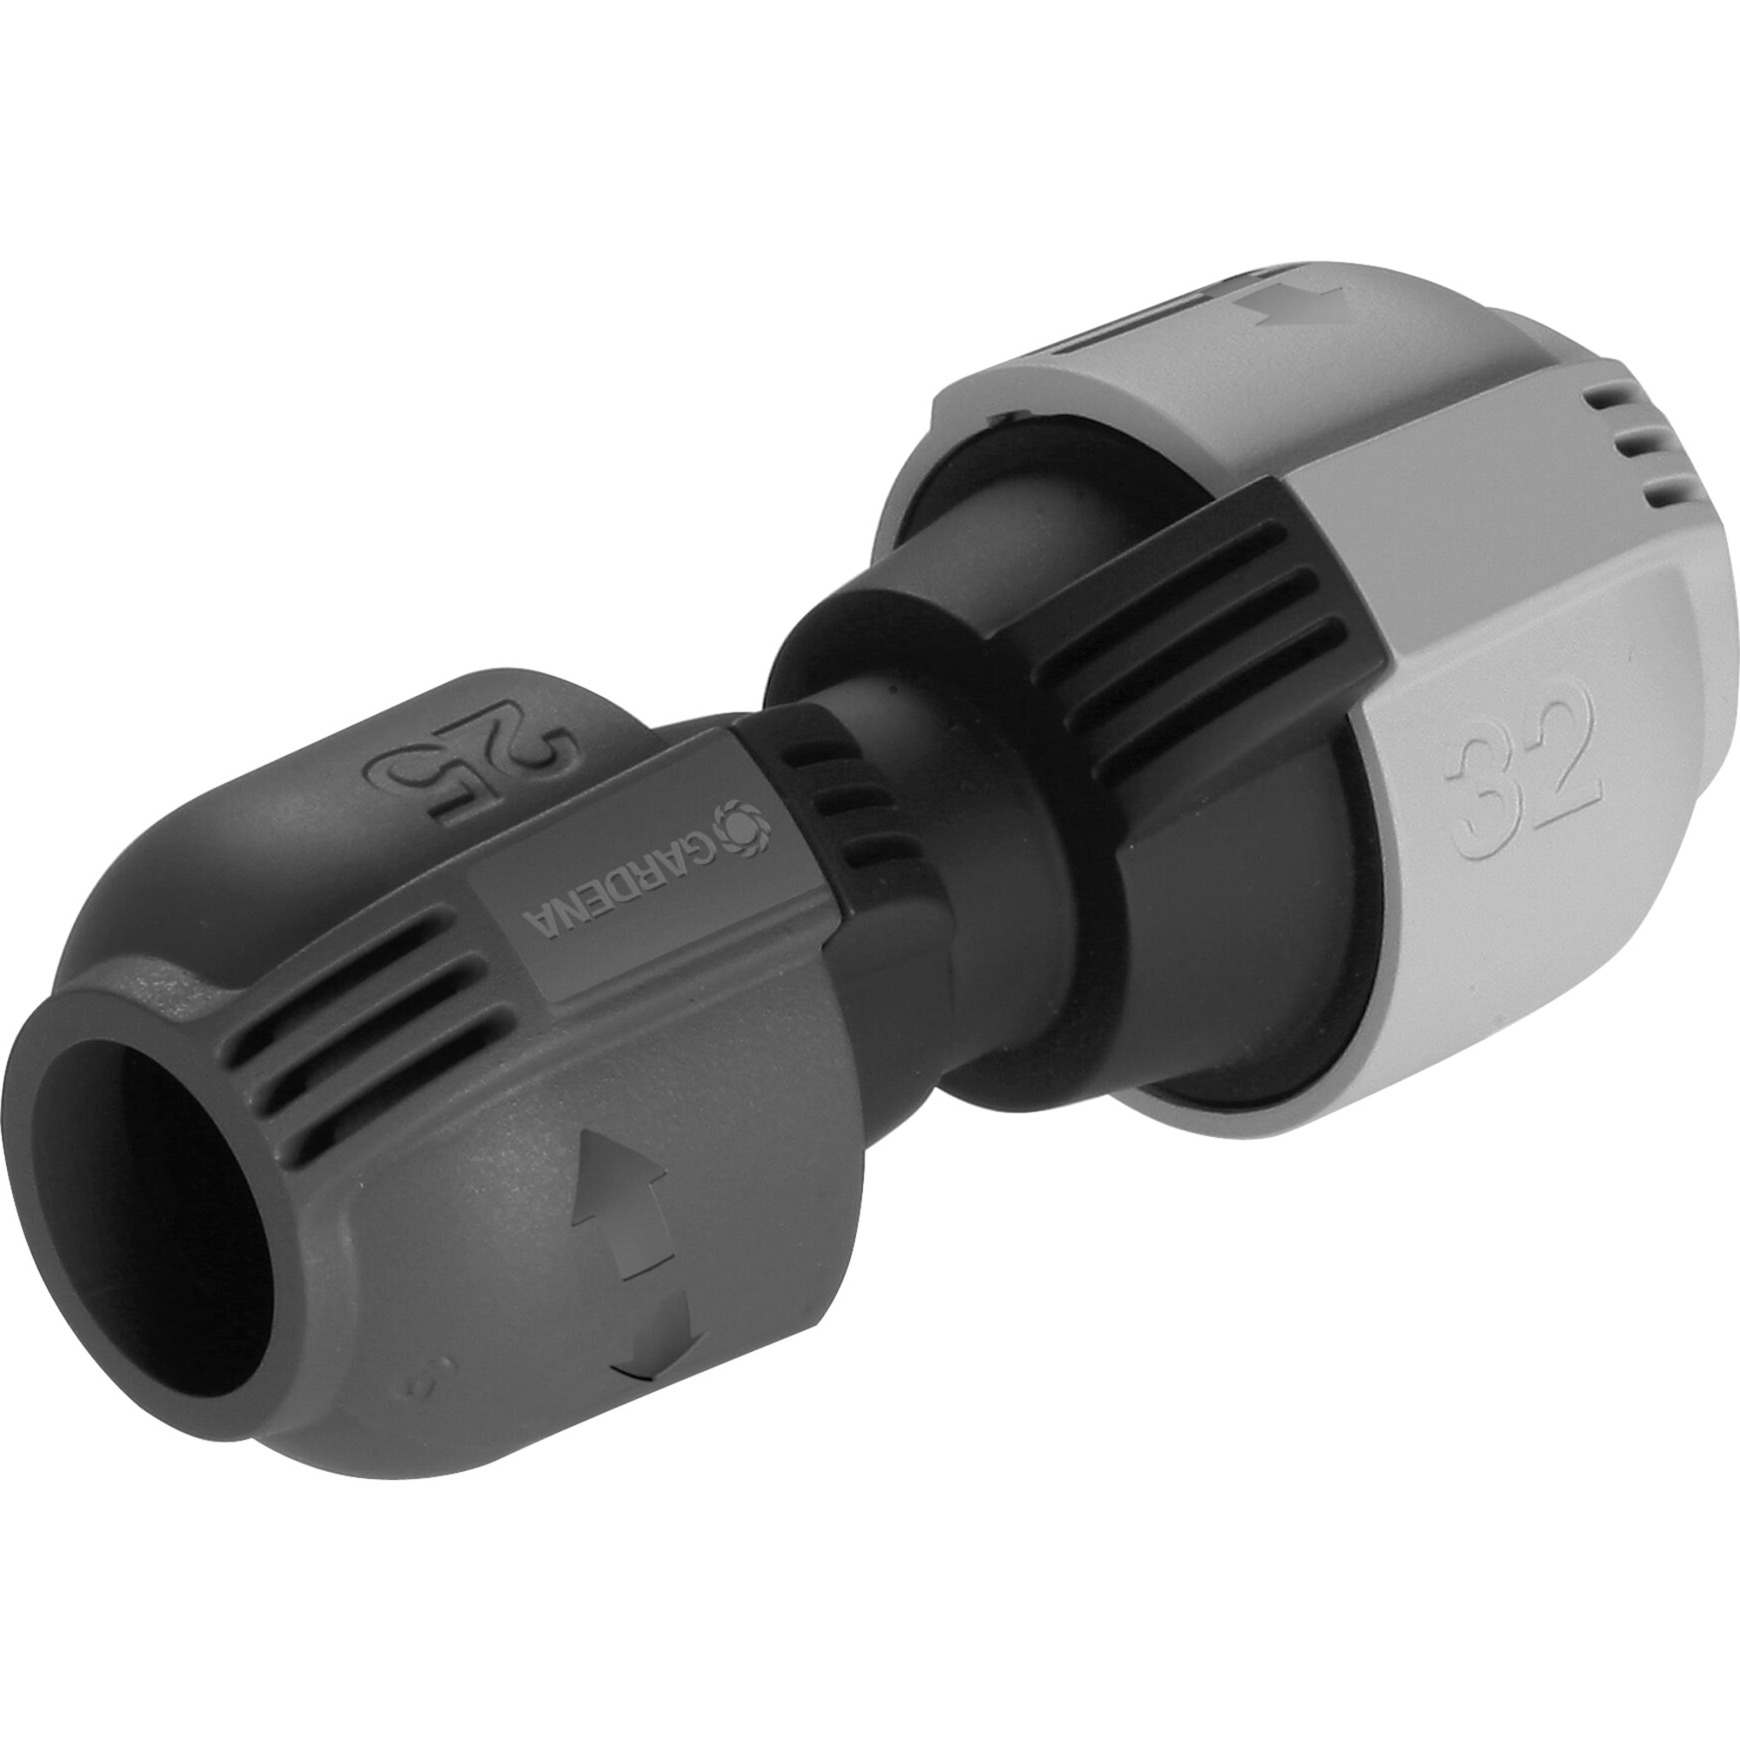 Image of Alternate - Sprinklersystem Verbinder-Stück mit Reduzierung 32mm > 25mm, Verbindung online einkaufen bei Alternate